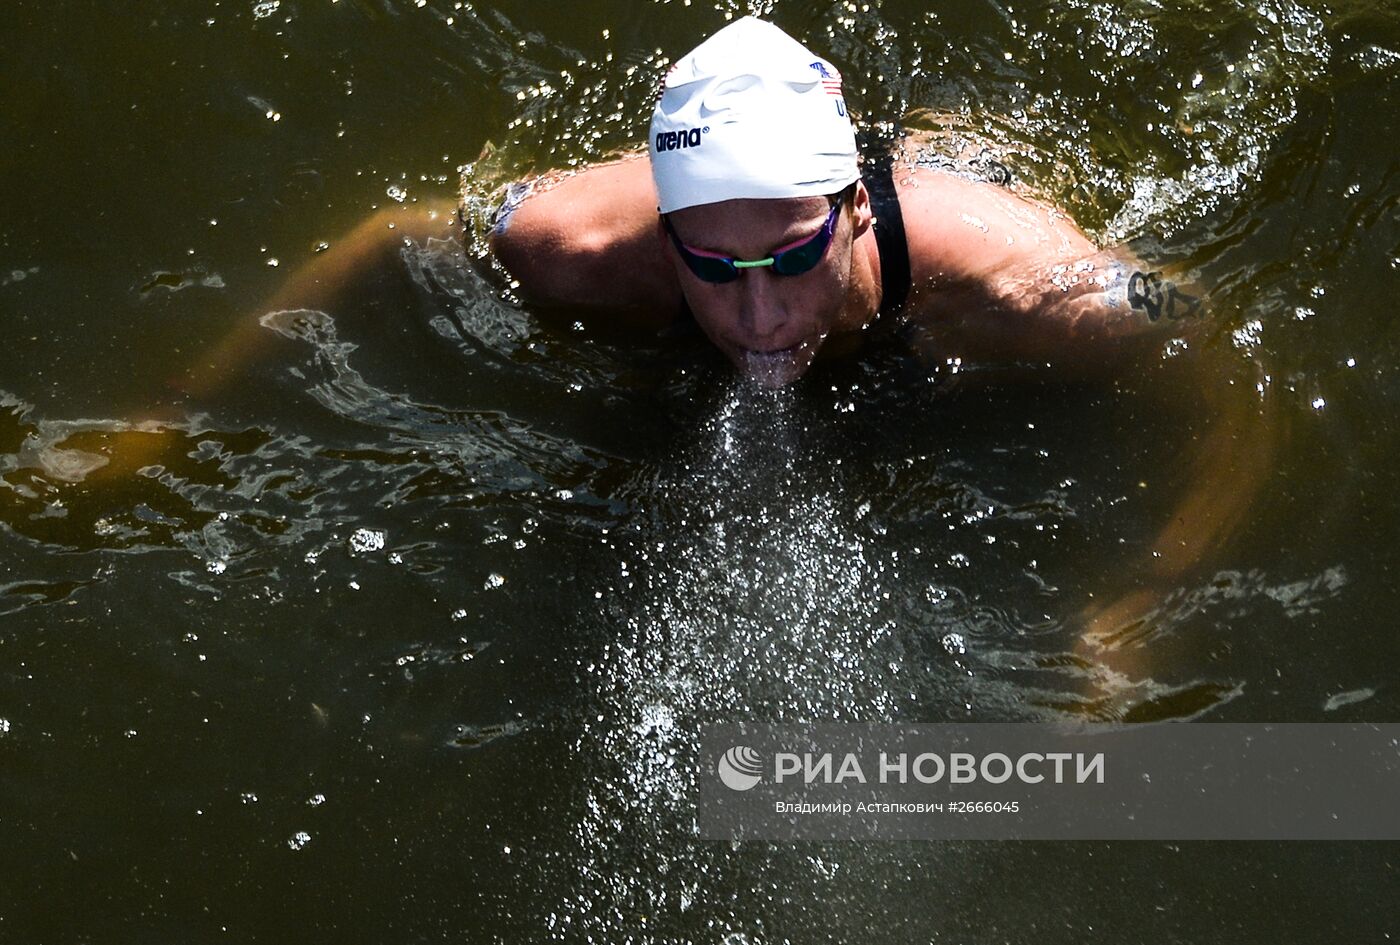 Чемпионат мира FINA 2015. Плавание на открытой воде. Мужчины. 10 км